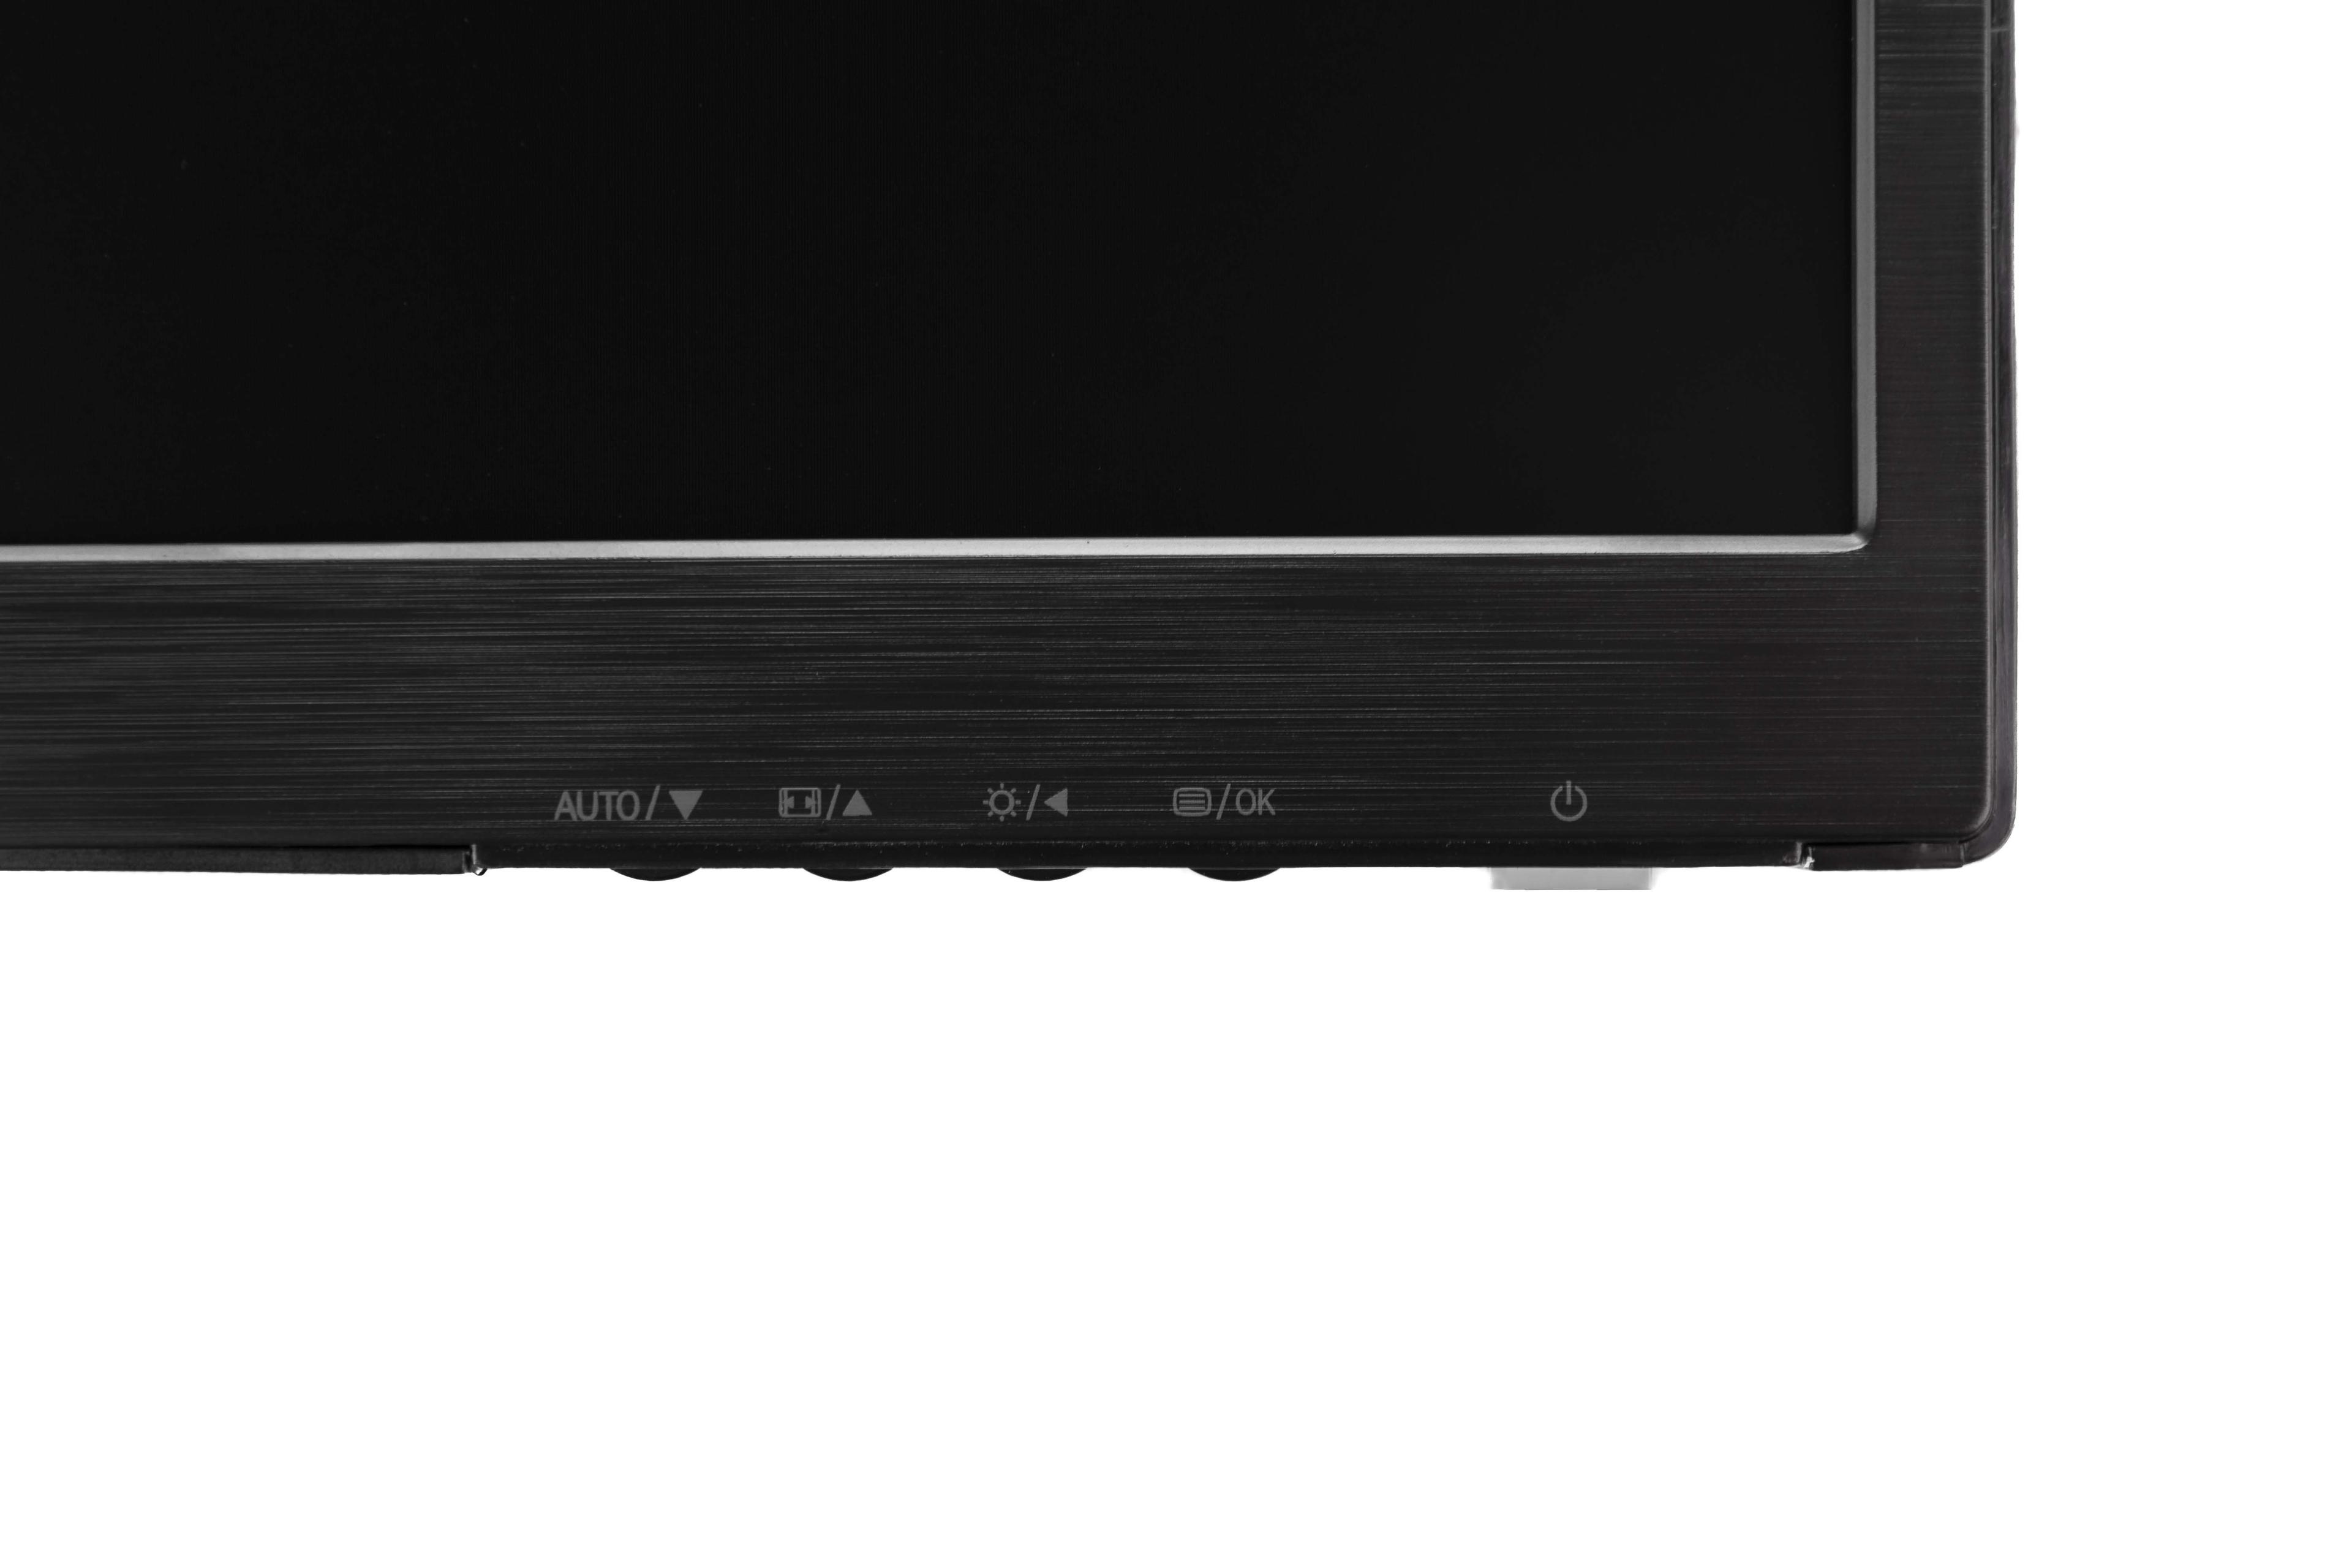 Monitor Philips 223V5LSB/00 (21,5"; TN; FullHD 1920x1080; VGA; kolor czarny)